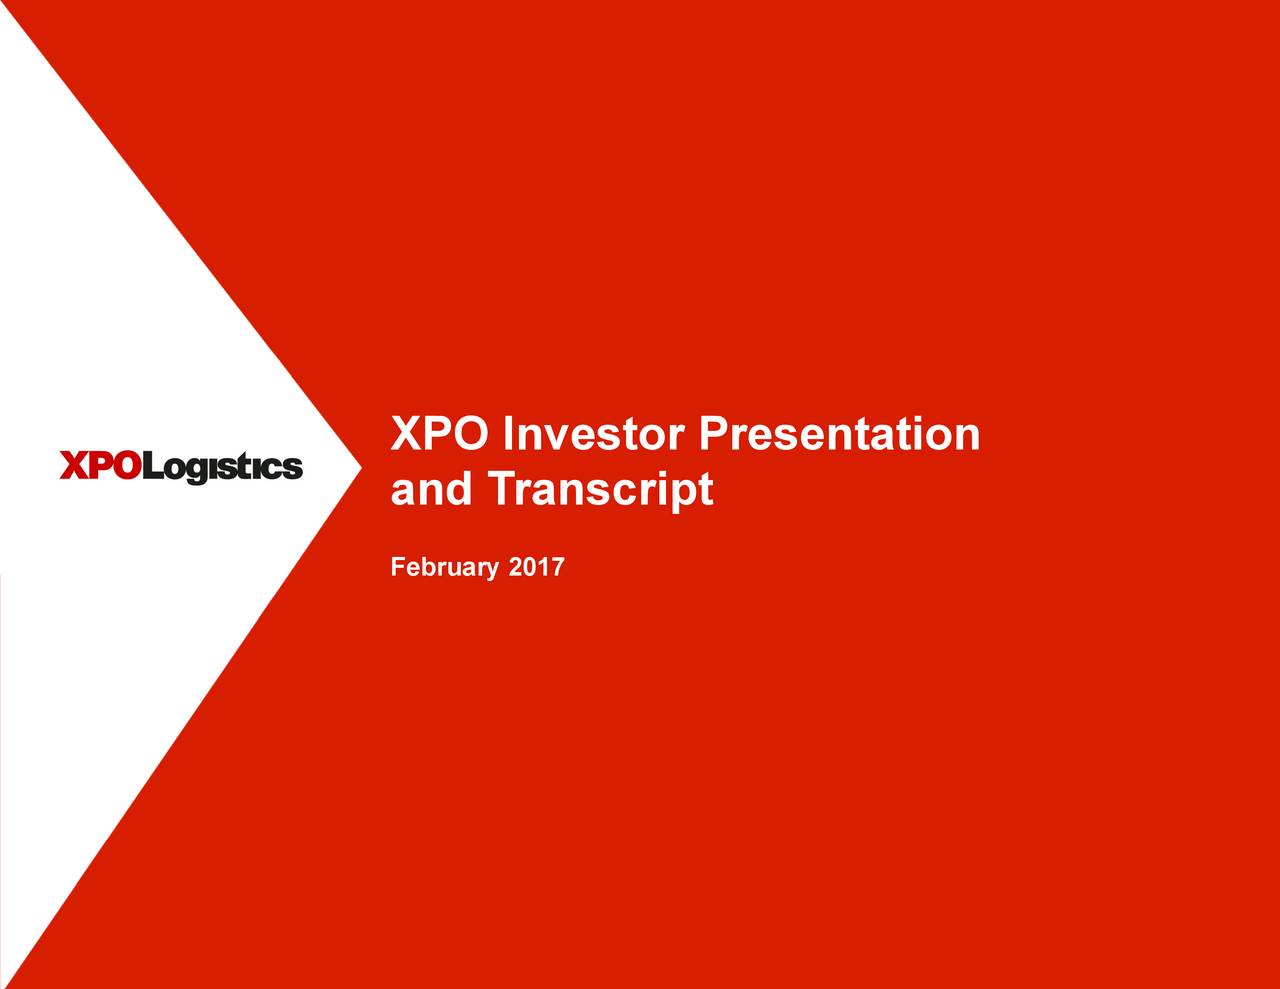 investor presentation xpo